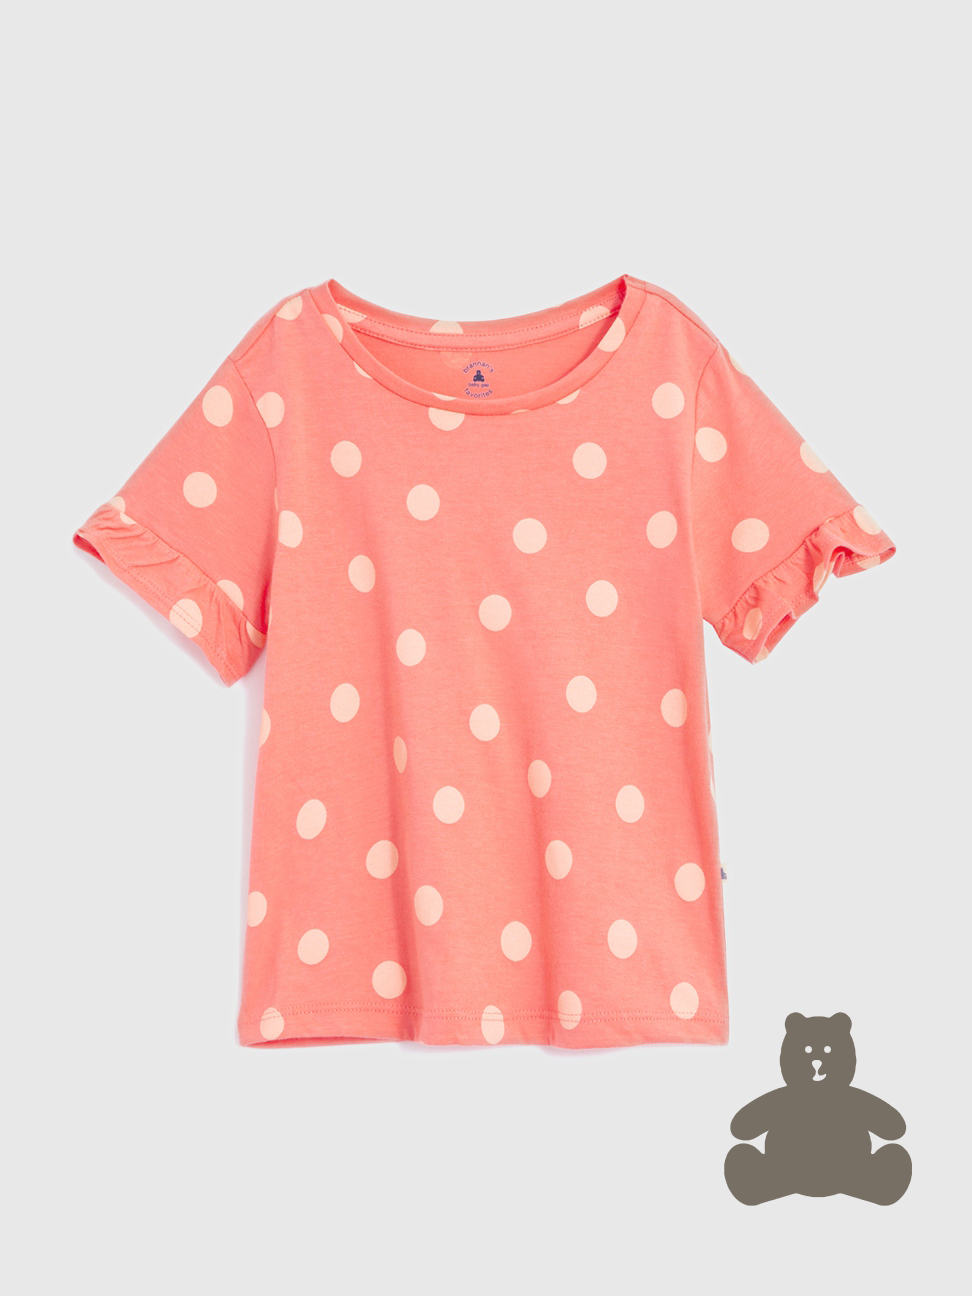 女幼童裝|純棉印花短袖T恤 布萊納系列-粉色波點